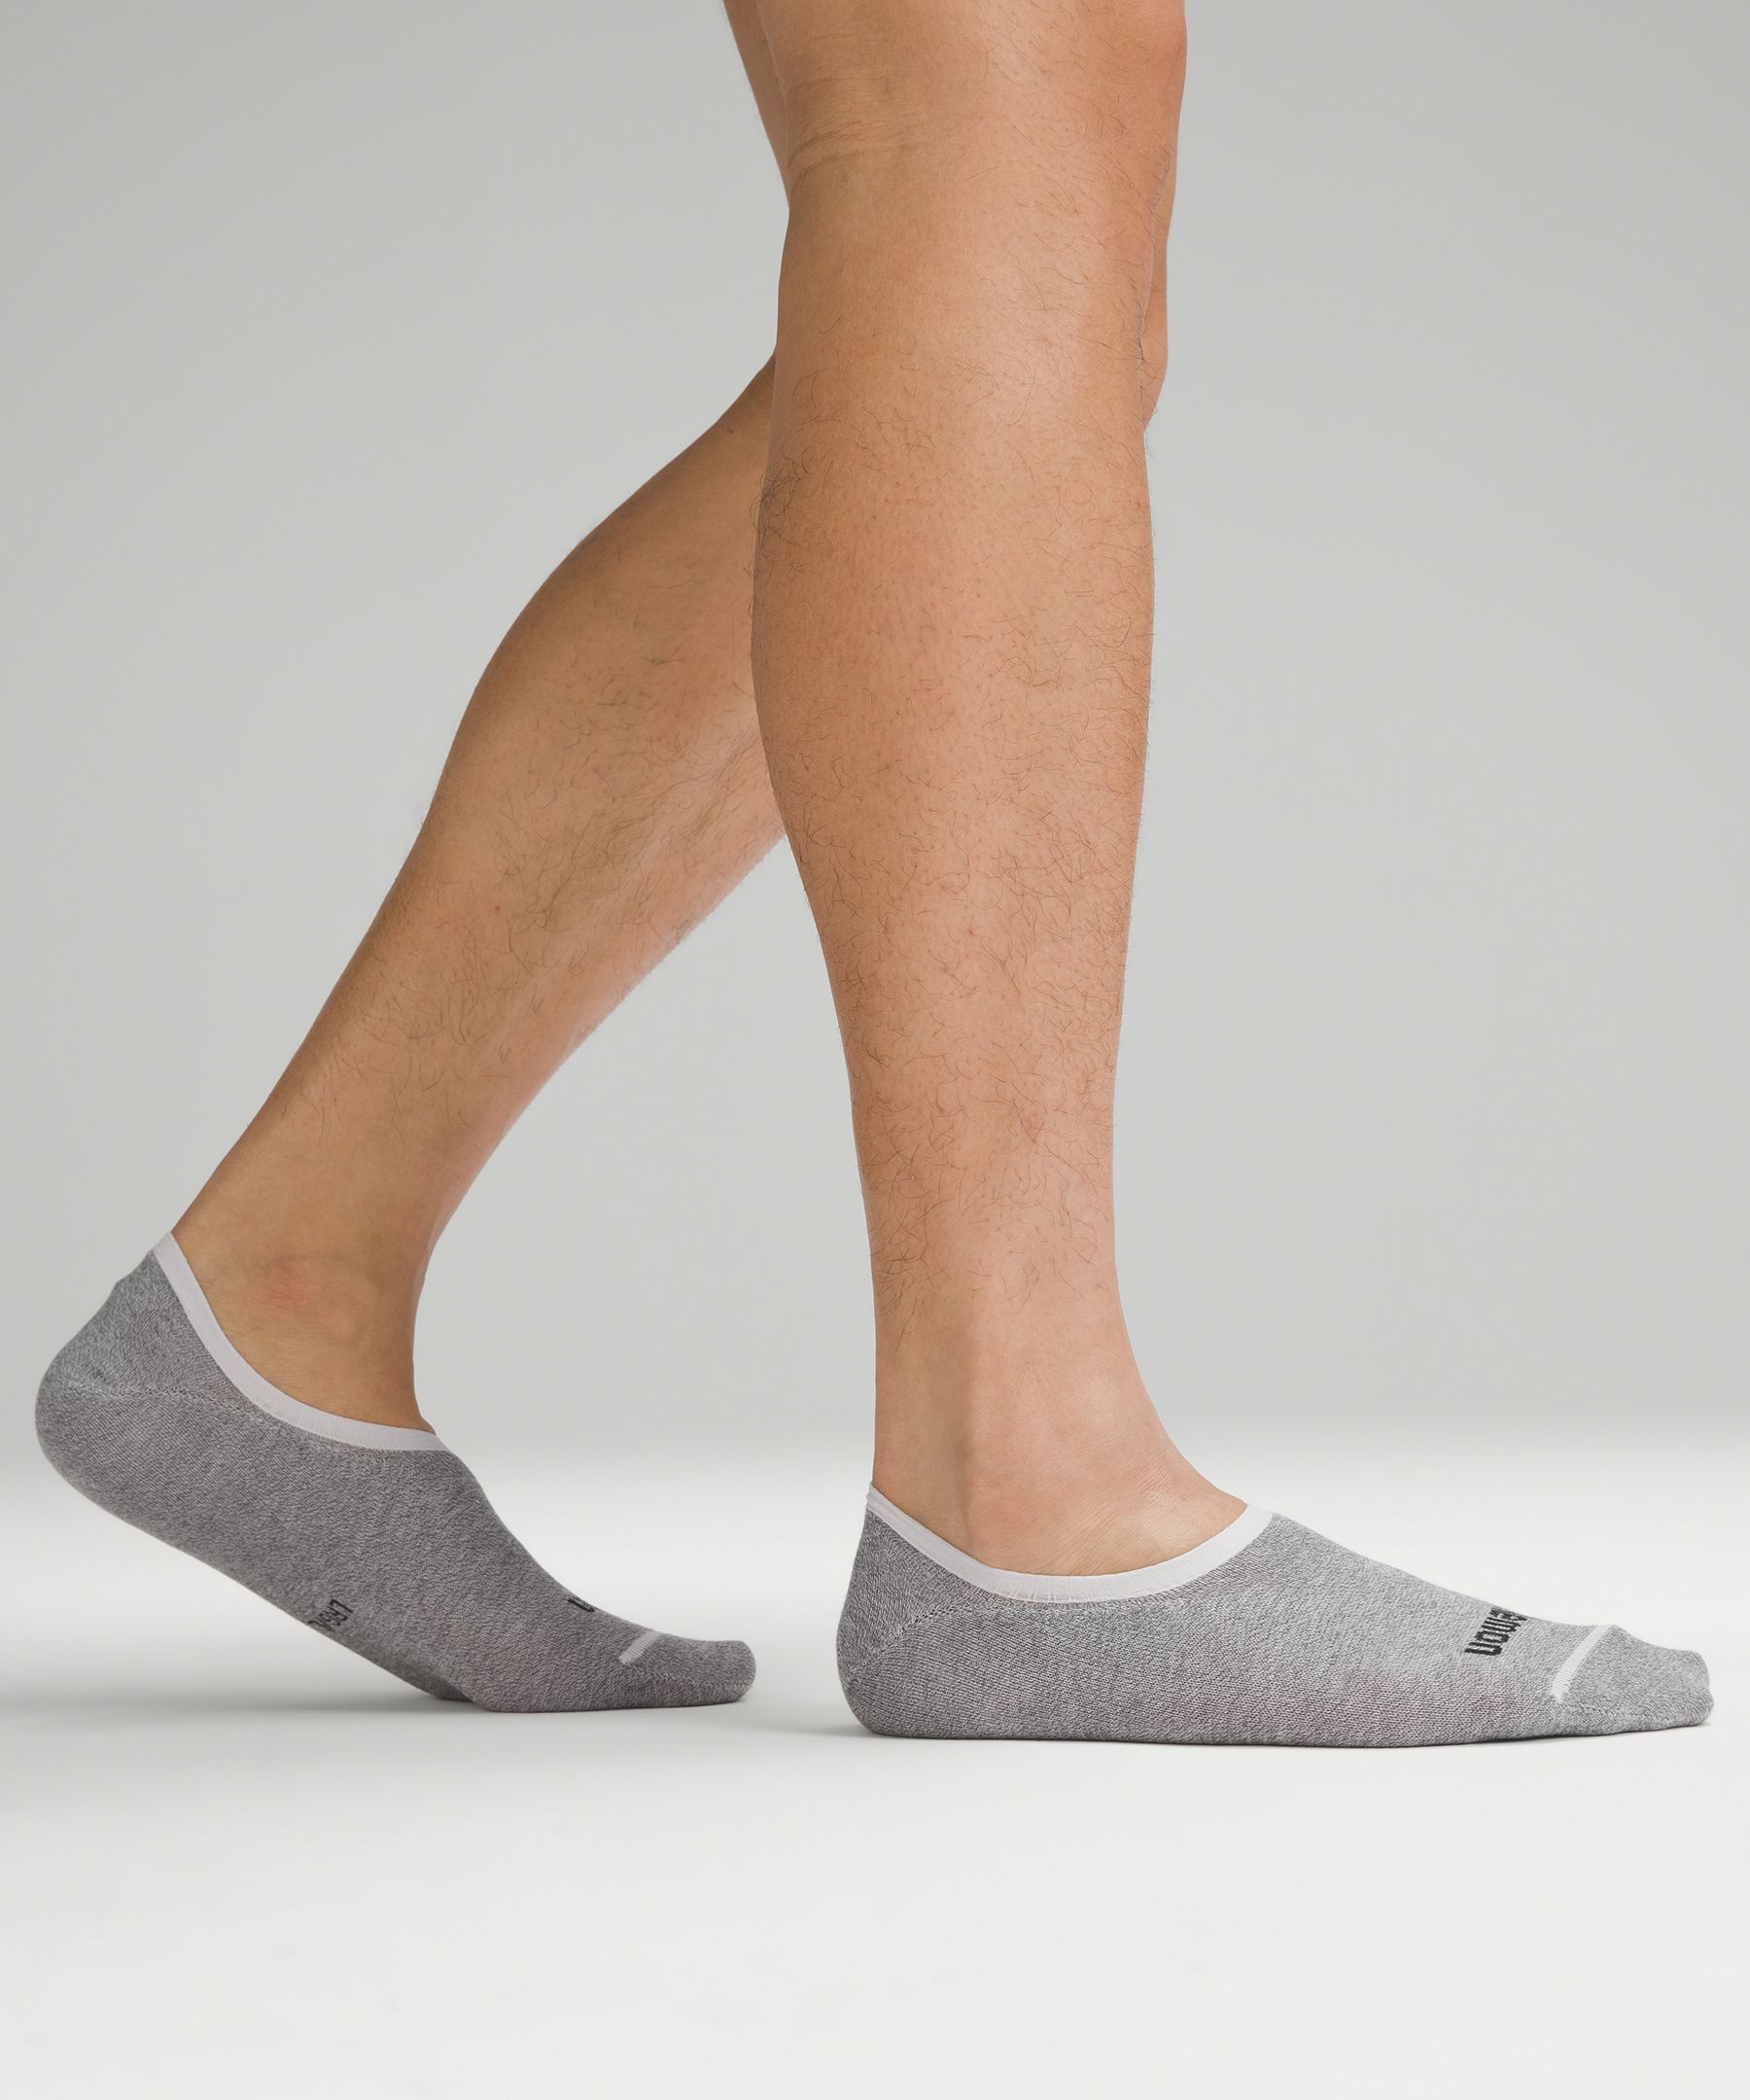 Shop Lululemon Daily Stride Comfort No-show Socks 5 Pack